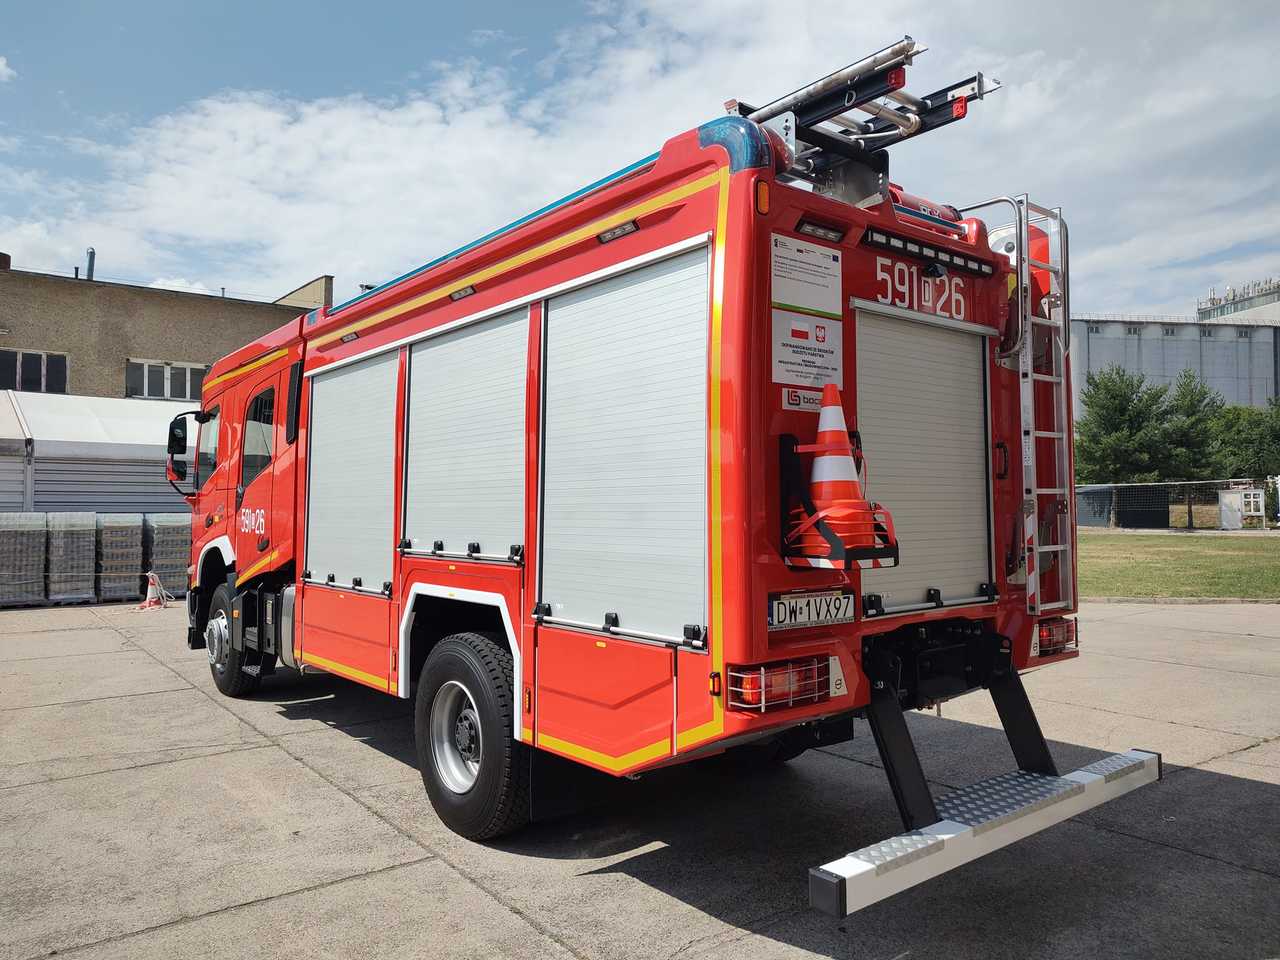 Nowy wóz strażacki rozpoczął służbę w Ząbkowicach Śląskich [FOTO]